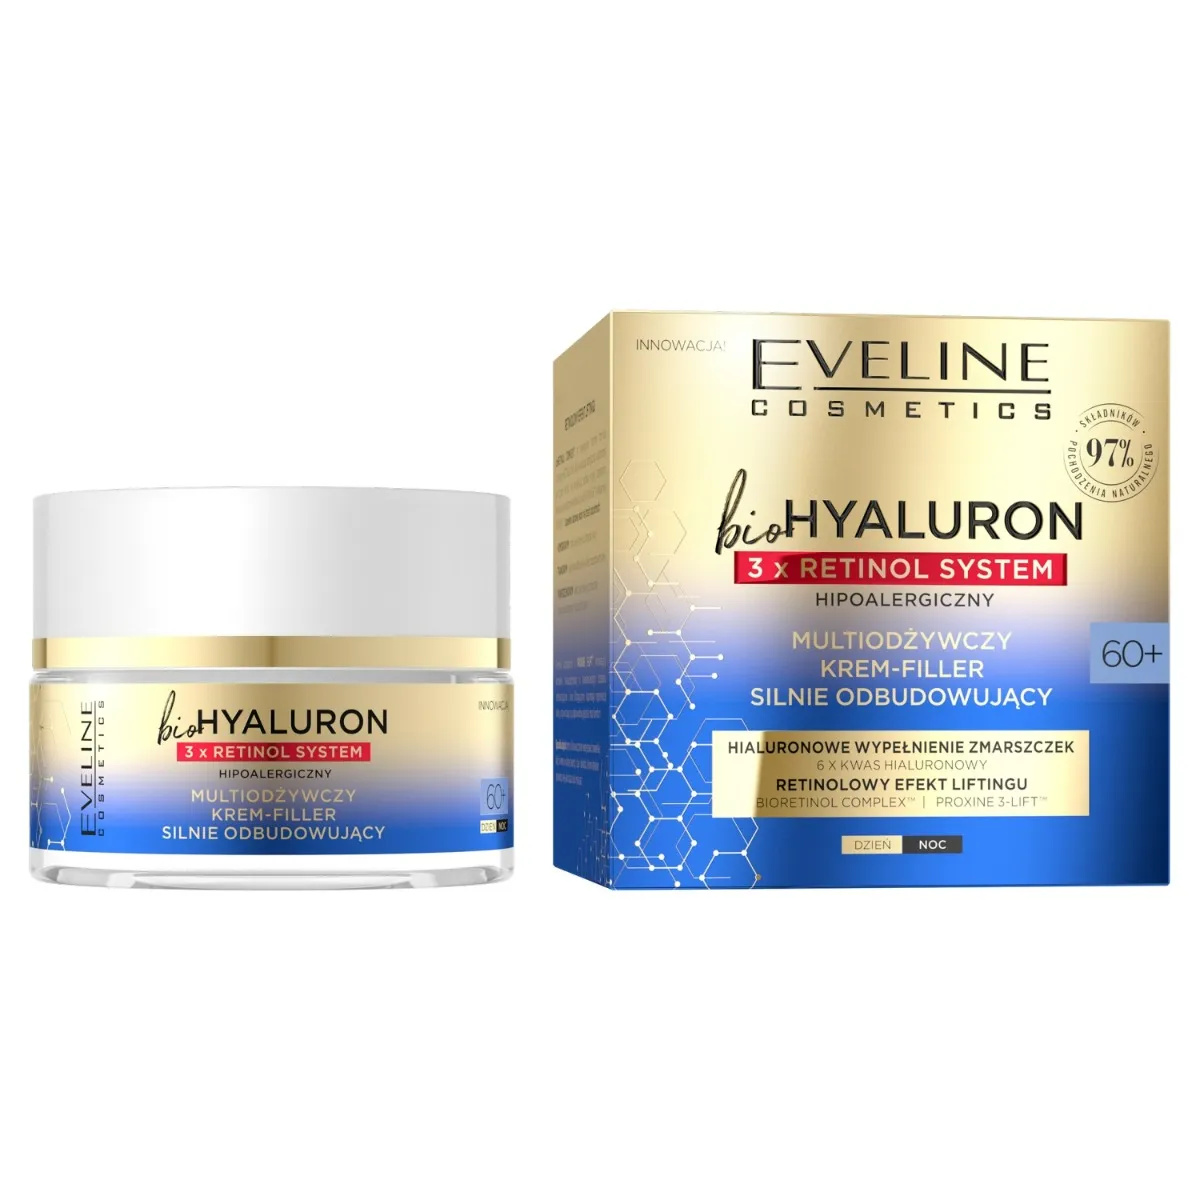 Eveline Cosmetics BioHyaluron 3 x Retinol System multiodżywczy krem-filler silnie odbudowujący 60+, 50 ml